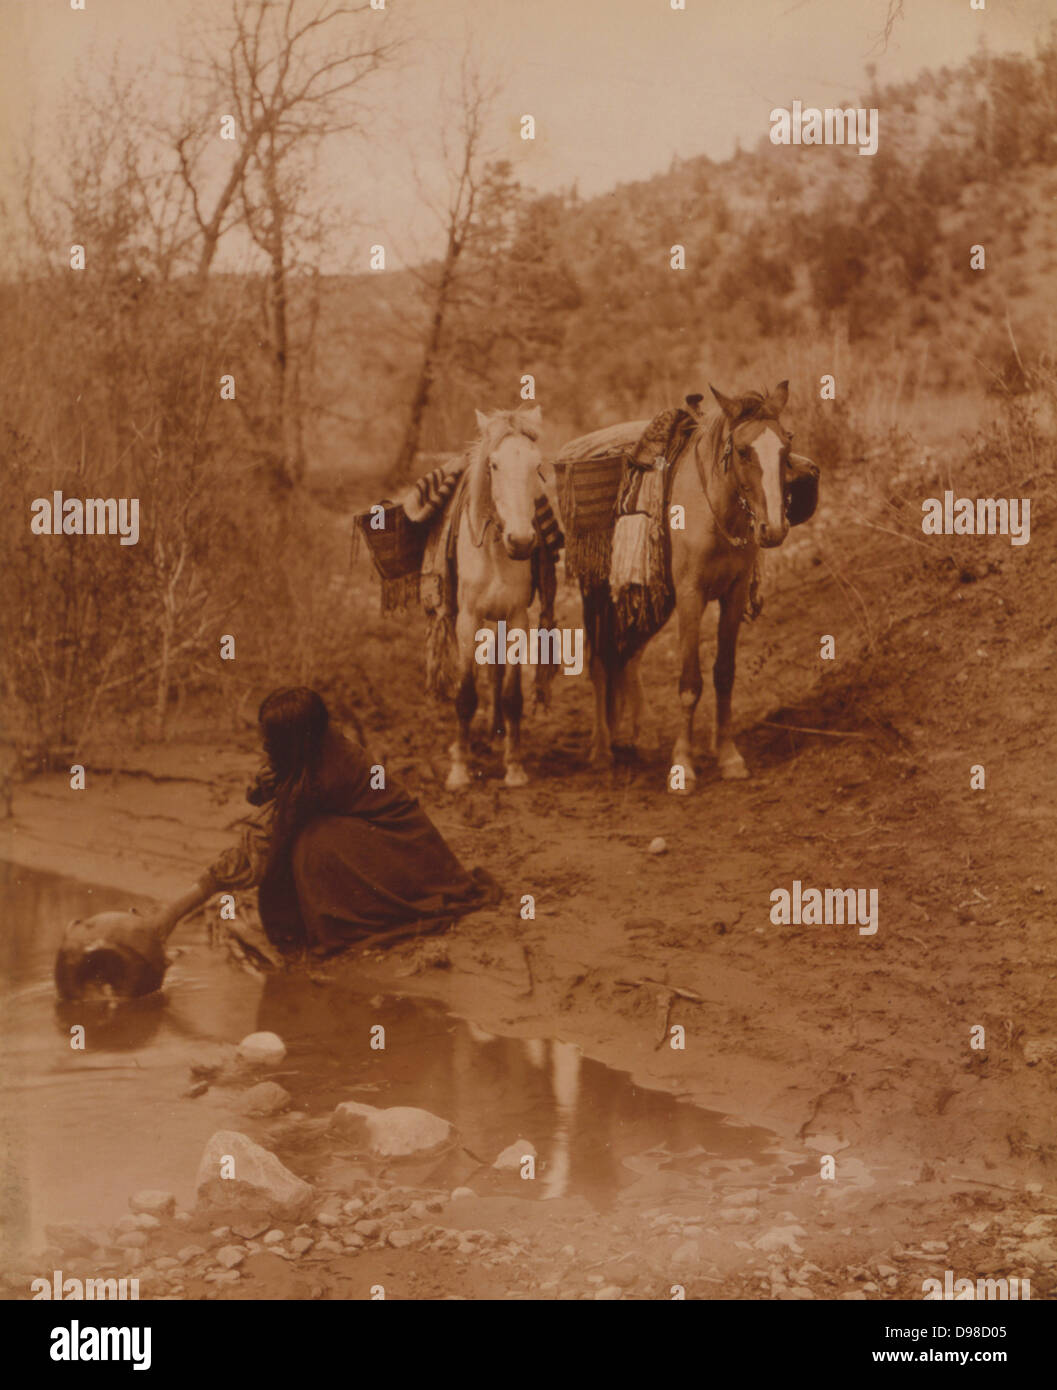 Un serveur Apache remplit un récipient avec de l'eau pendant que deux chevaux de bât à attendre sur la rive du fleuve, 1908. Photographie, Edward Curtis (1868-1952). Banque D'Images